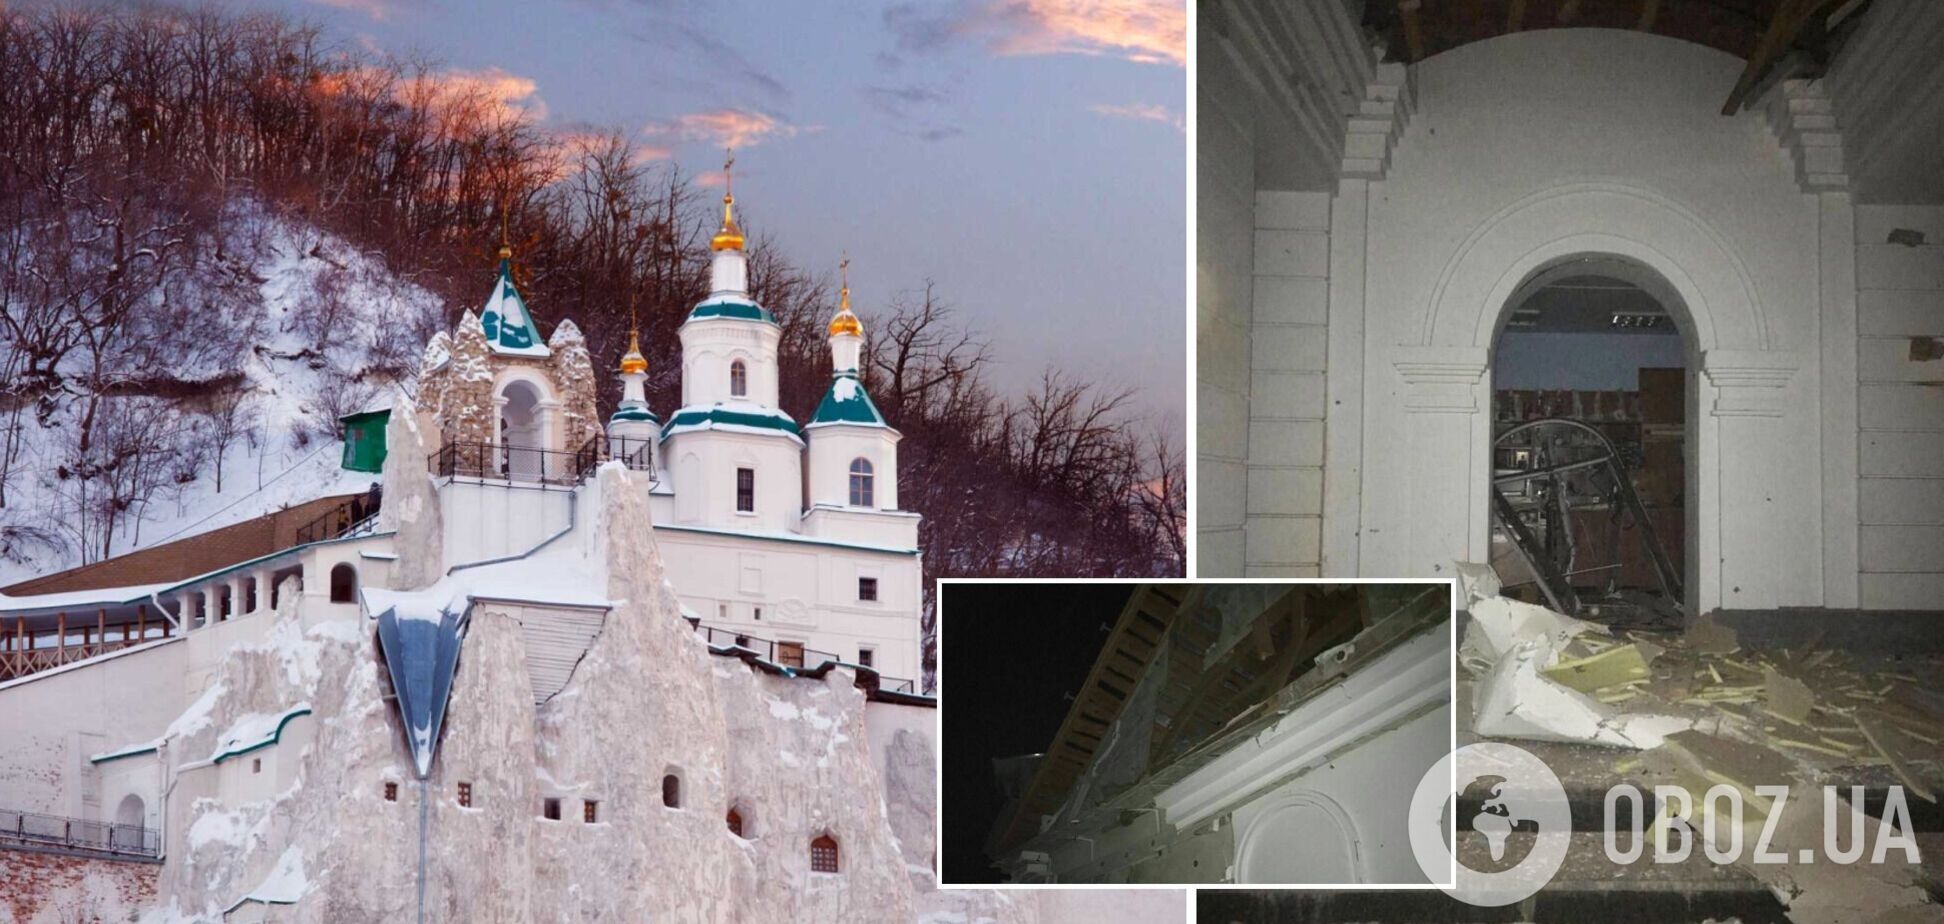 Российские оккупанты обстреляли Святогорскую лавру, где находились украинские беженцы. Фото и видео